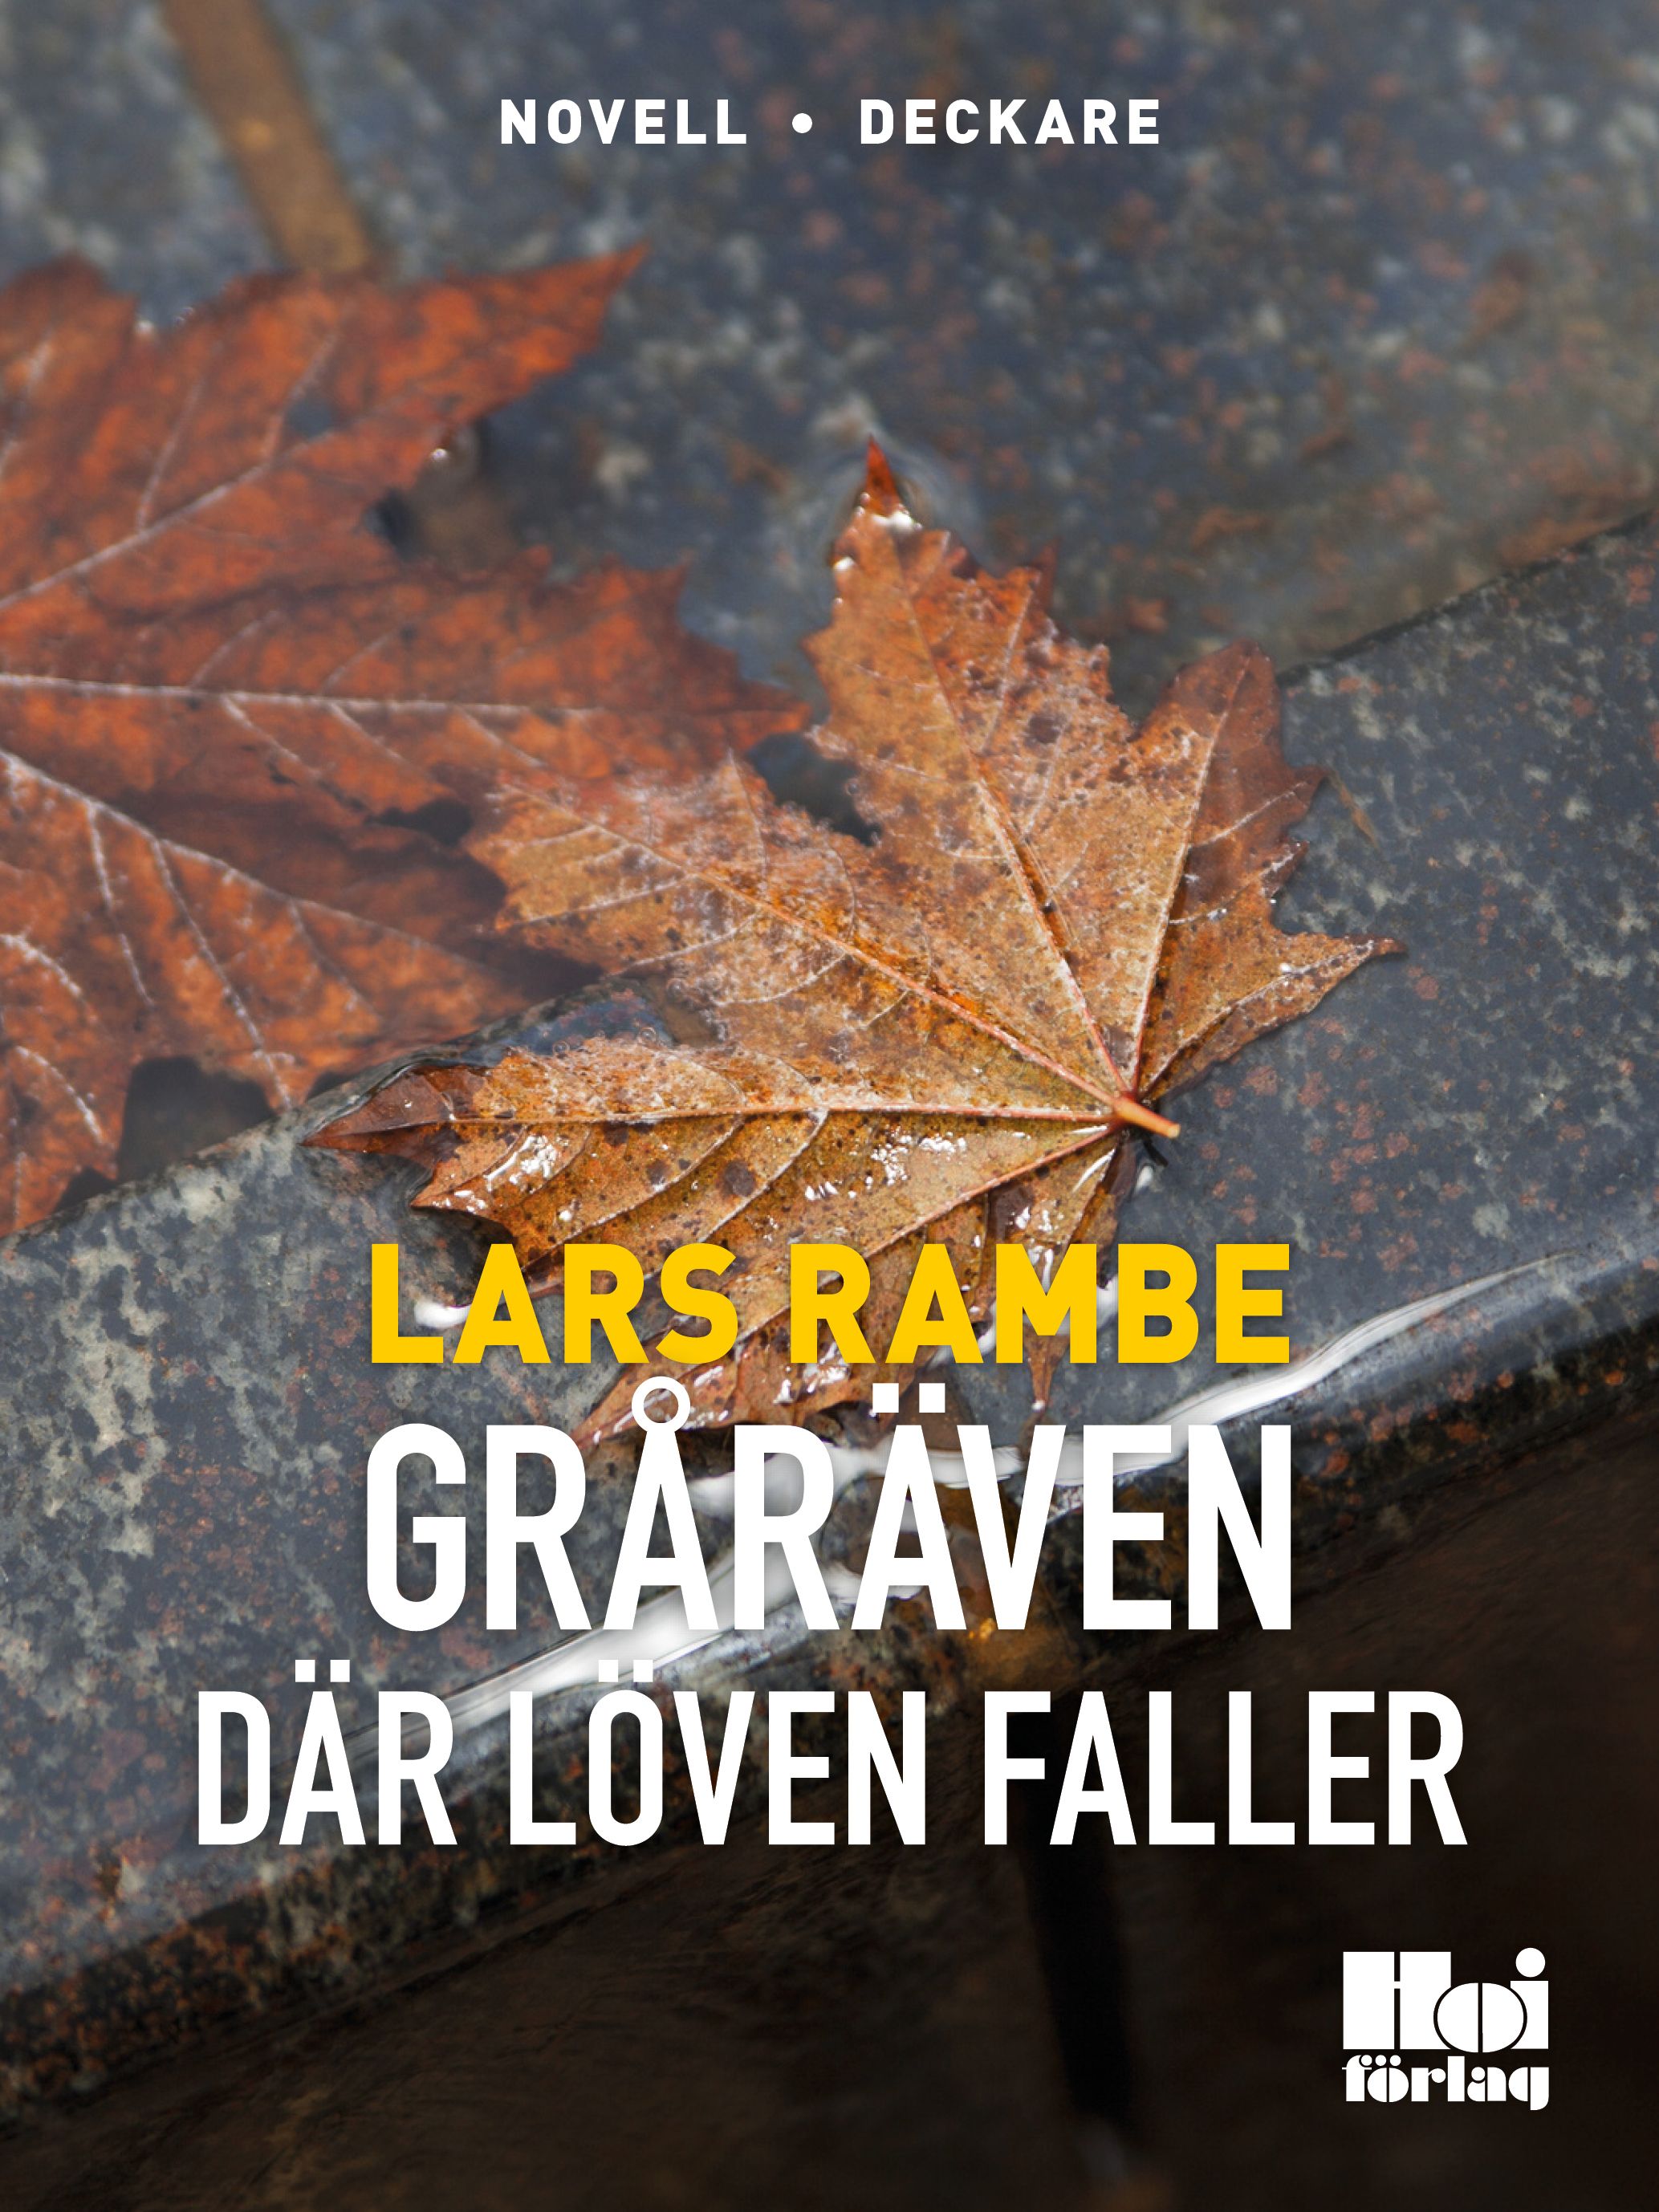 Gråräven 2 - Där löven faller, e-bog af Lars Rambe